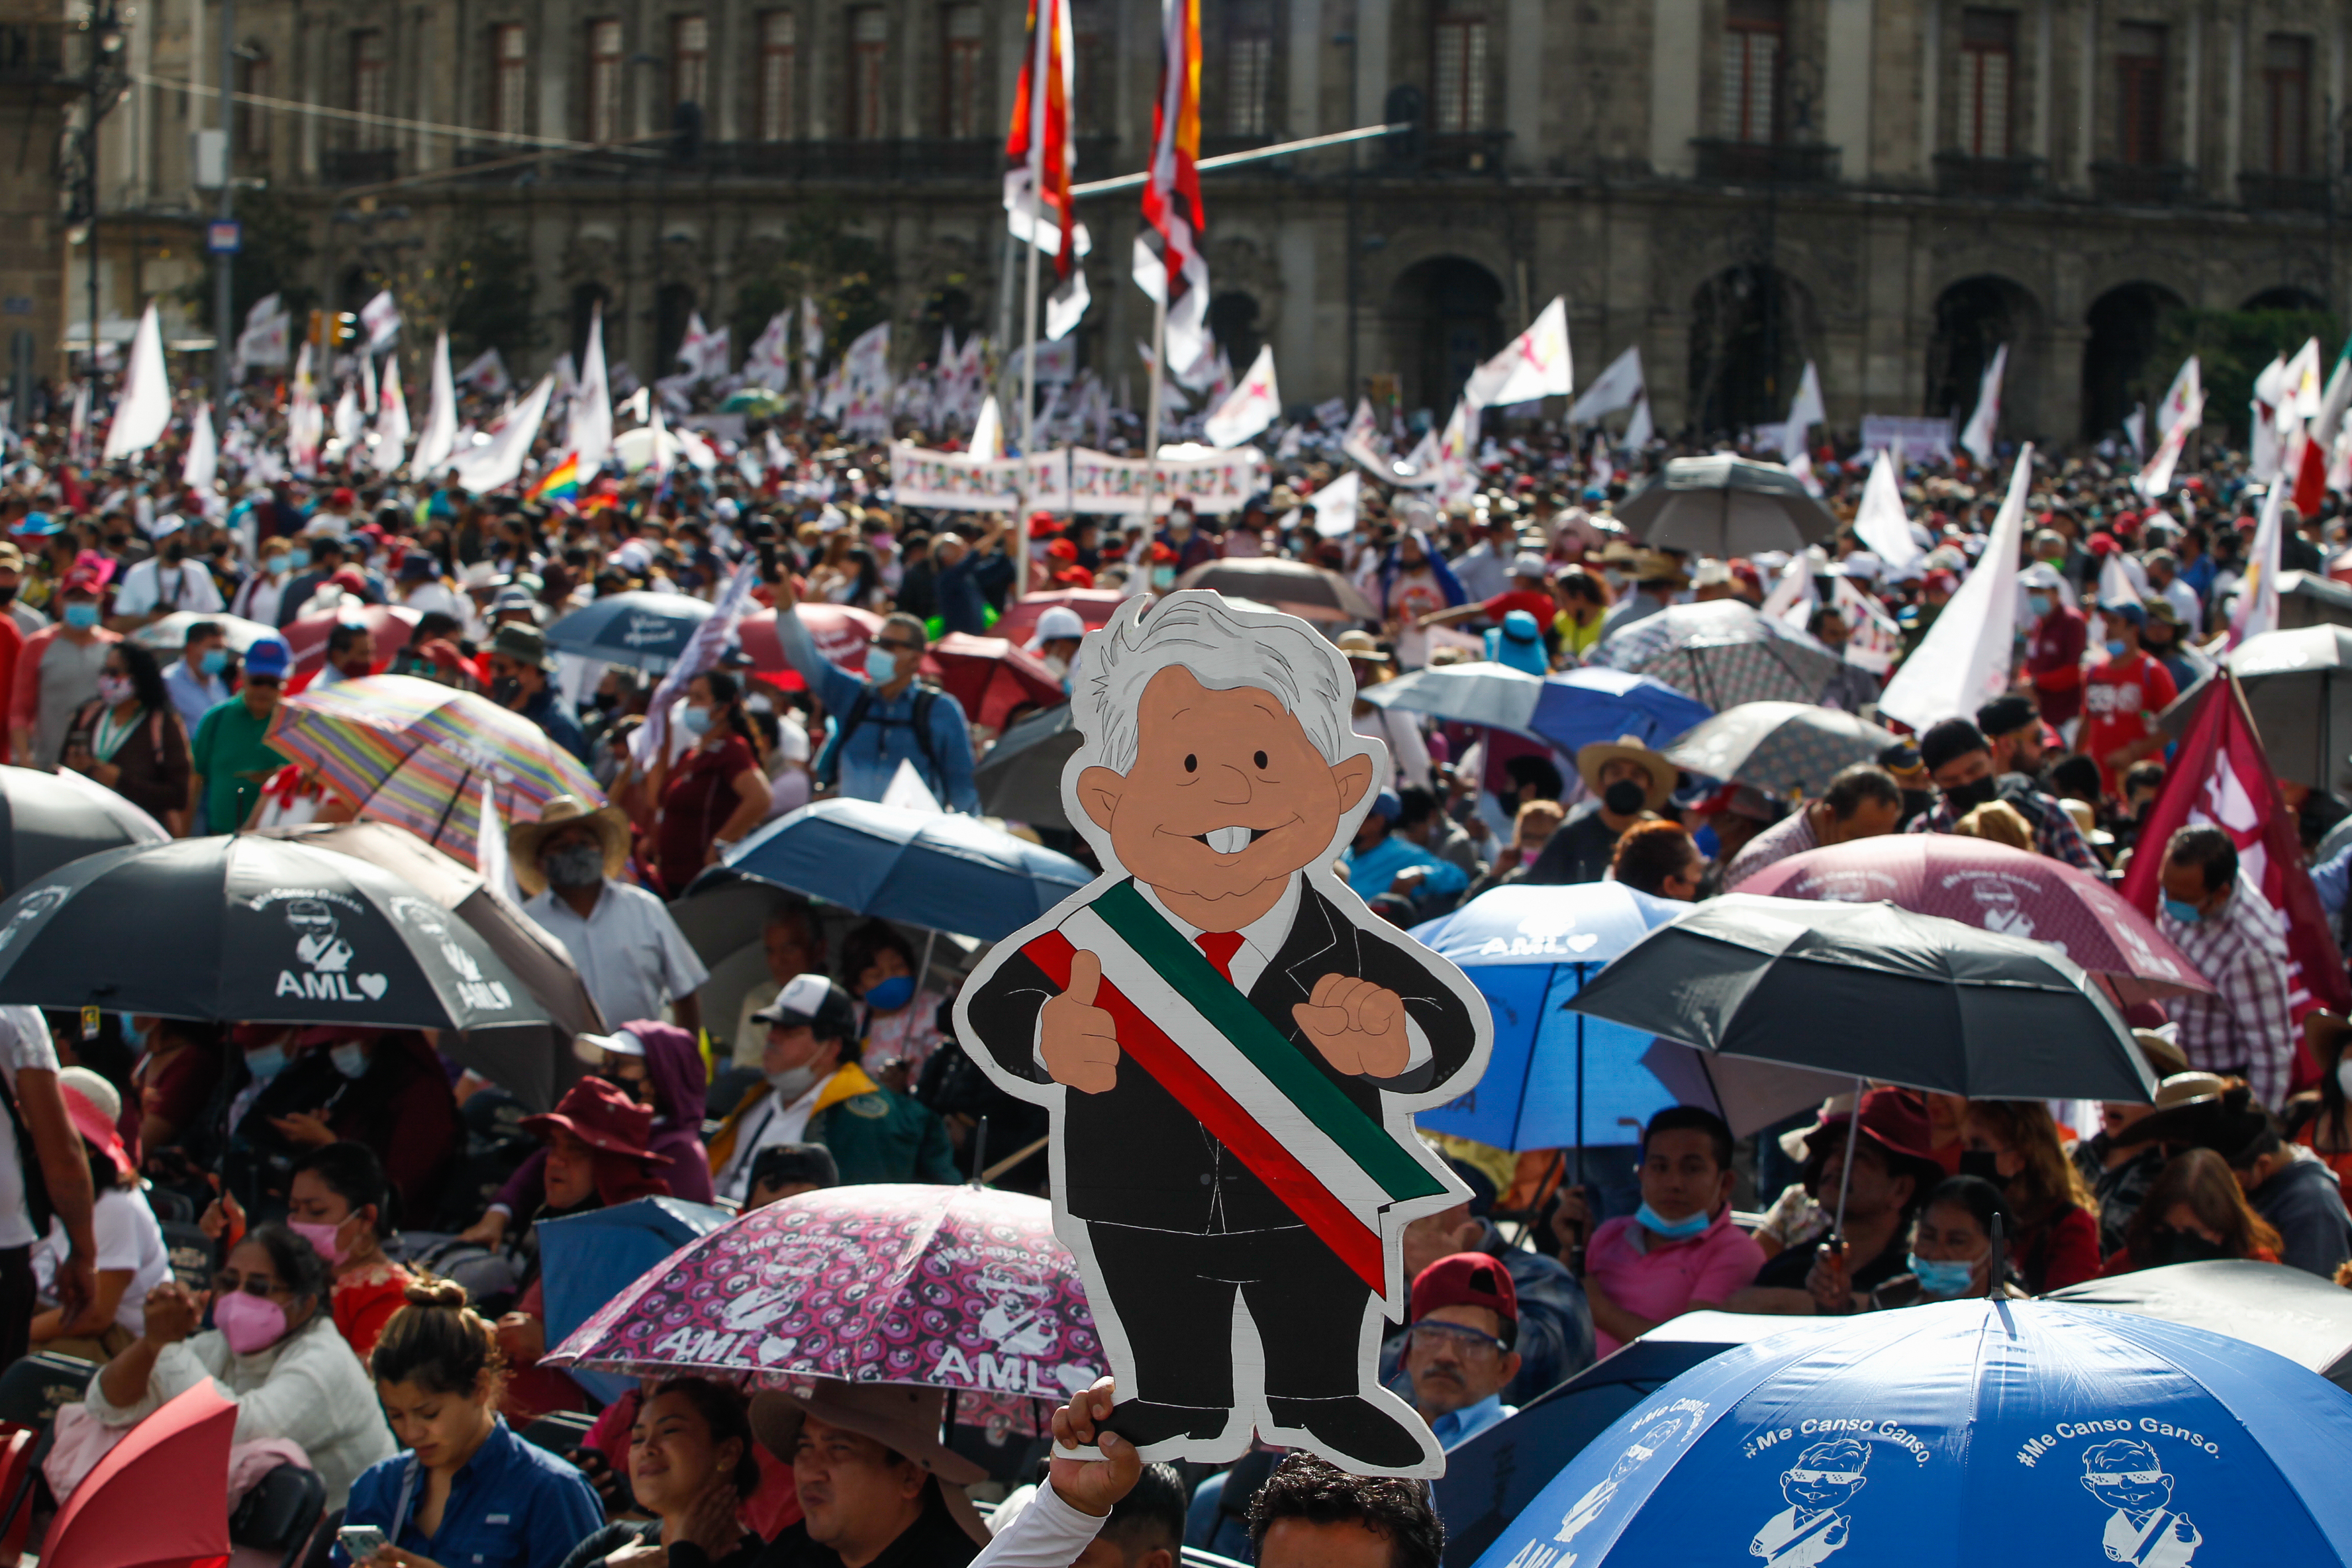 El legislador de Regeneración Nacional destacó que en la movilización del domingo irán en bloques (Foto: Karina Hernández / Infobae)